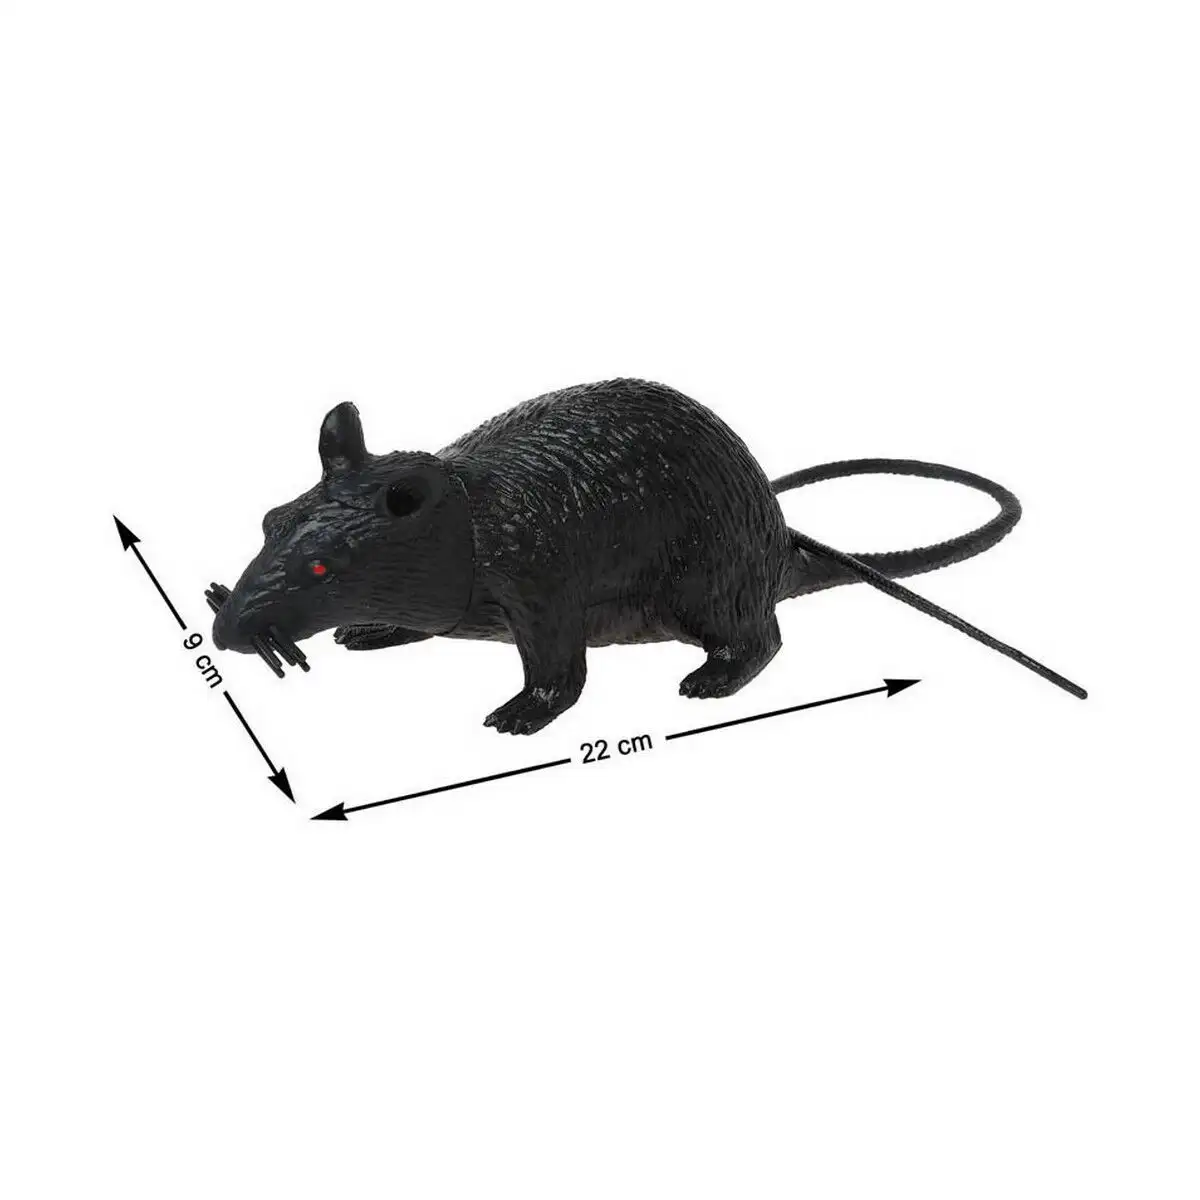 Rat decorative noir 22 x 9 cm_5532. DIAYTAR SENEGAL - Votre Passage vers l'Élégance Abordable. Explorez notre collection où chaque produit est choisi pour sa qualité et son accessibilité, incarnant ainsi l'essence du Sénégal.